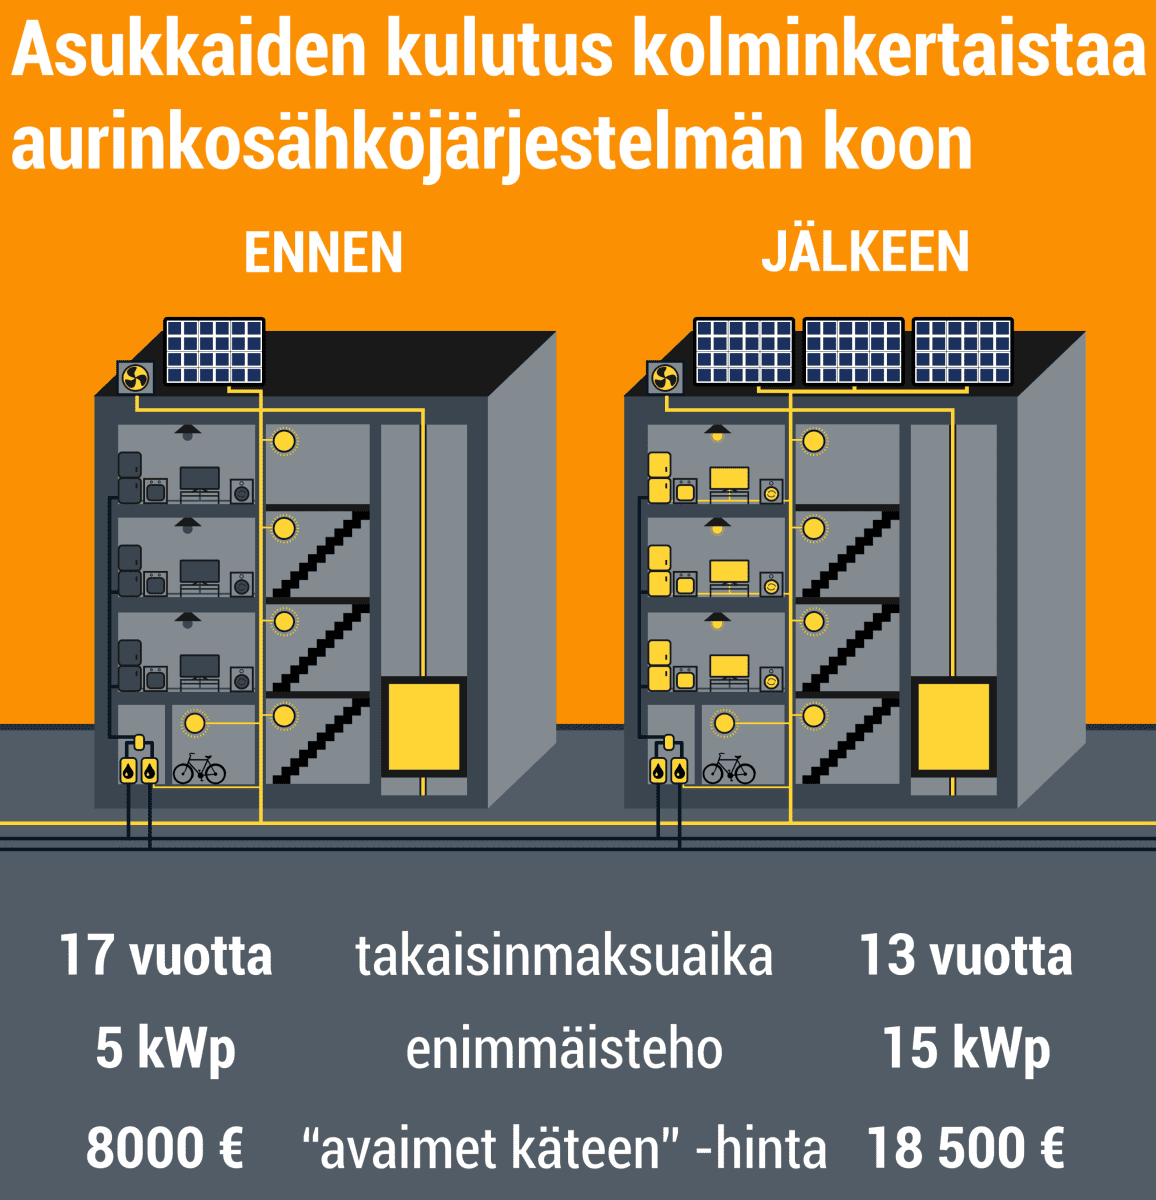 Asukkaiden kulutus kolminkertaistaa aurinkosähköjärjestelmän koon. Ennen kerrotaloon sopi parhaiten 5 kilowatin järjestelmä, joka maksoi 8000 euroa ja  takaisinmaksuaika oli 17 vuotta. Muutoksen jälkeen sopivan kokoisen järjestelmän teho nousee 15 kilowattiin. Sellaisen hinta on 18500 euroa ja takaisinmaksuaika 13 vuotta.